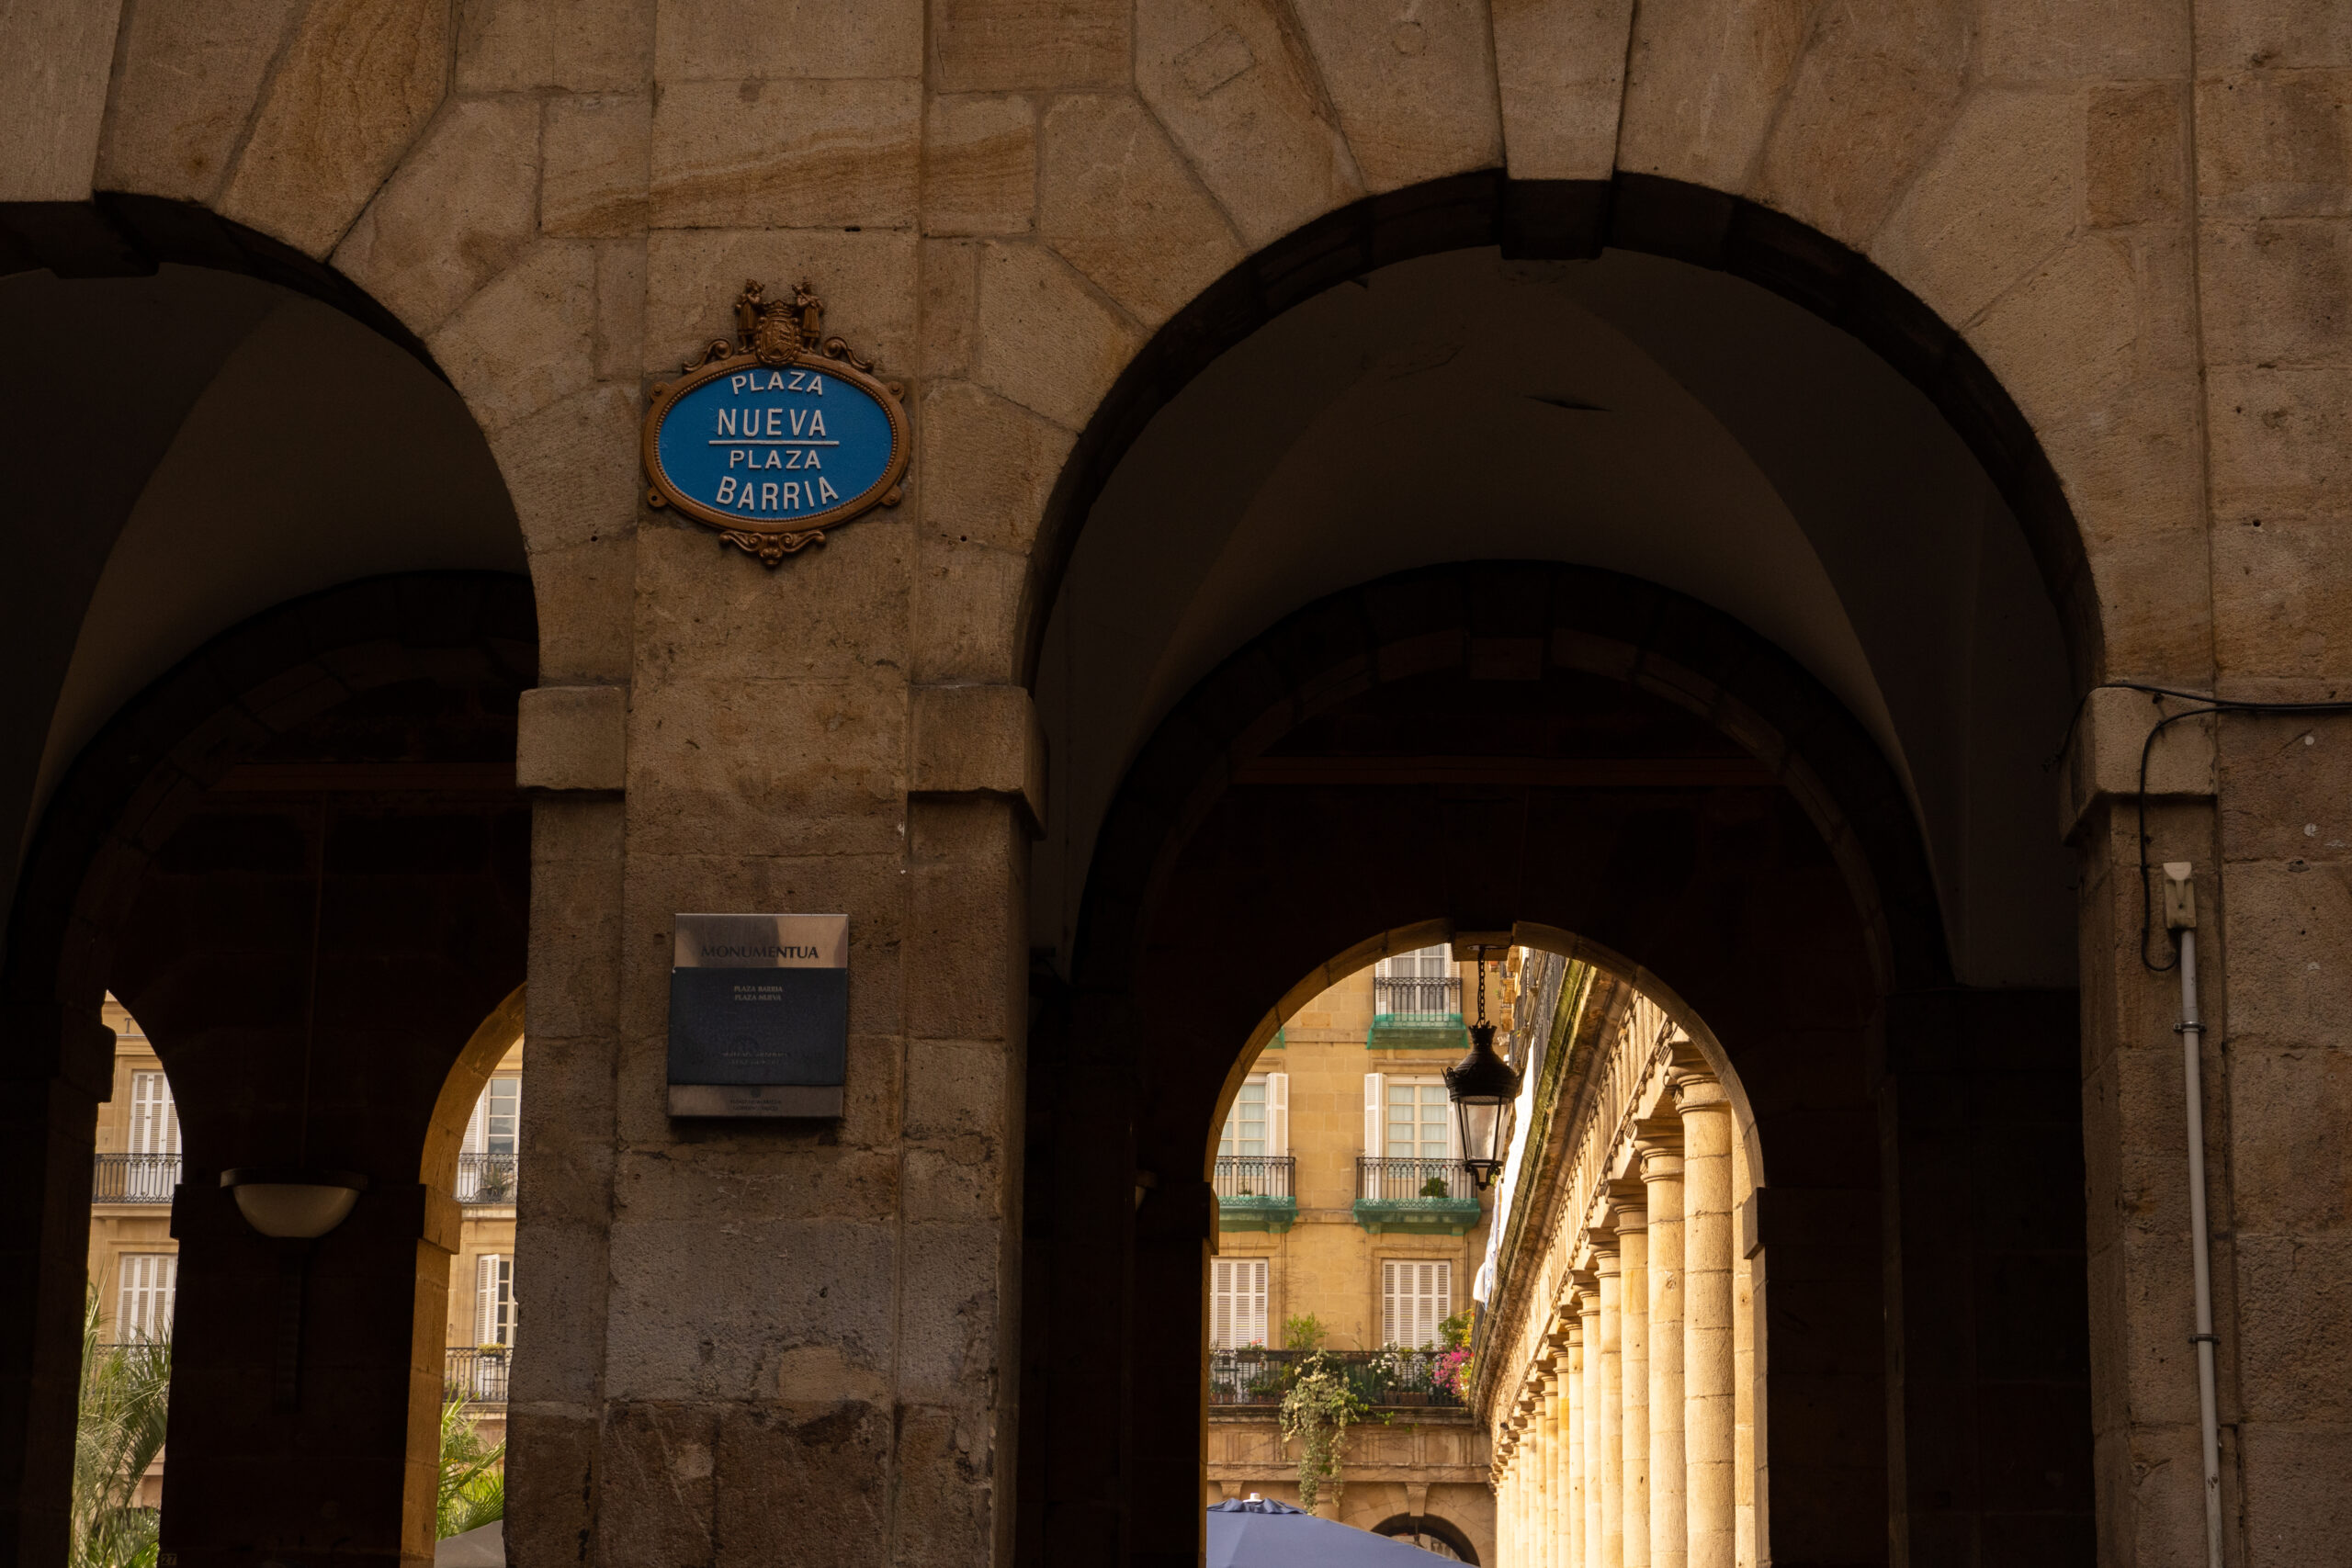 Bild: Bögen als Eingang zum einem Platz in Bilbao